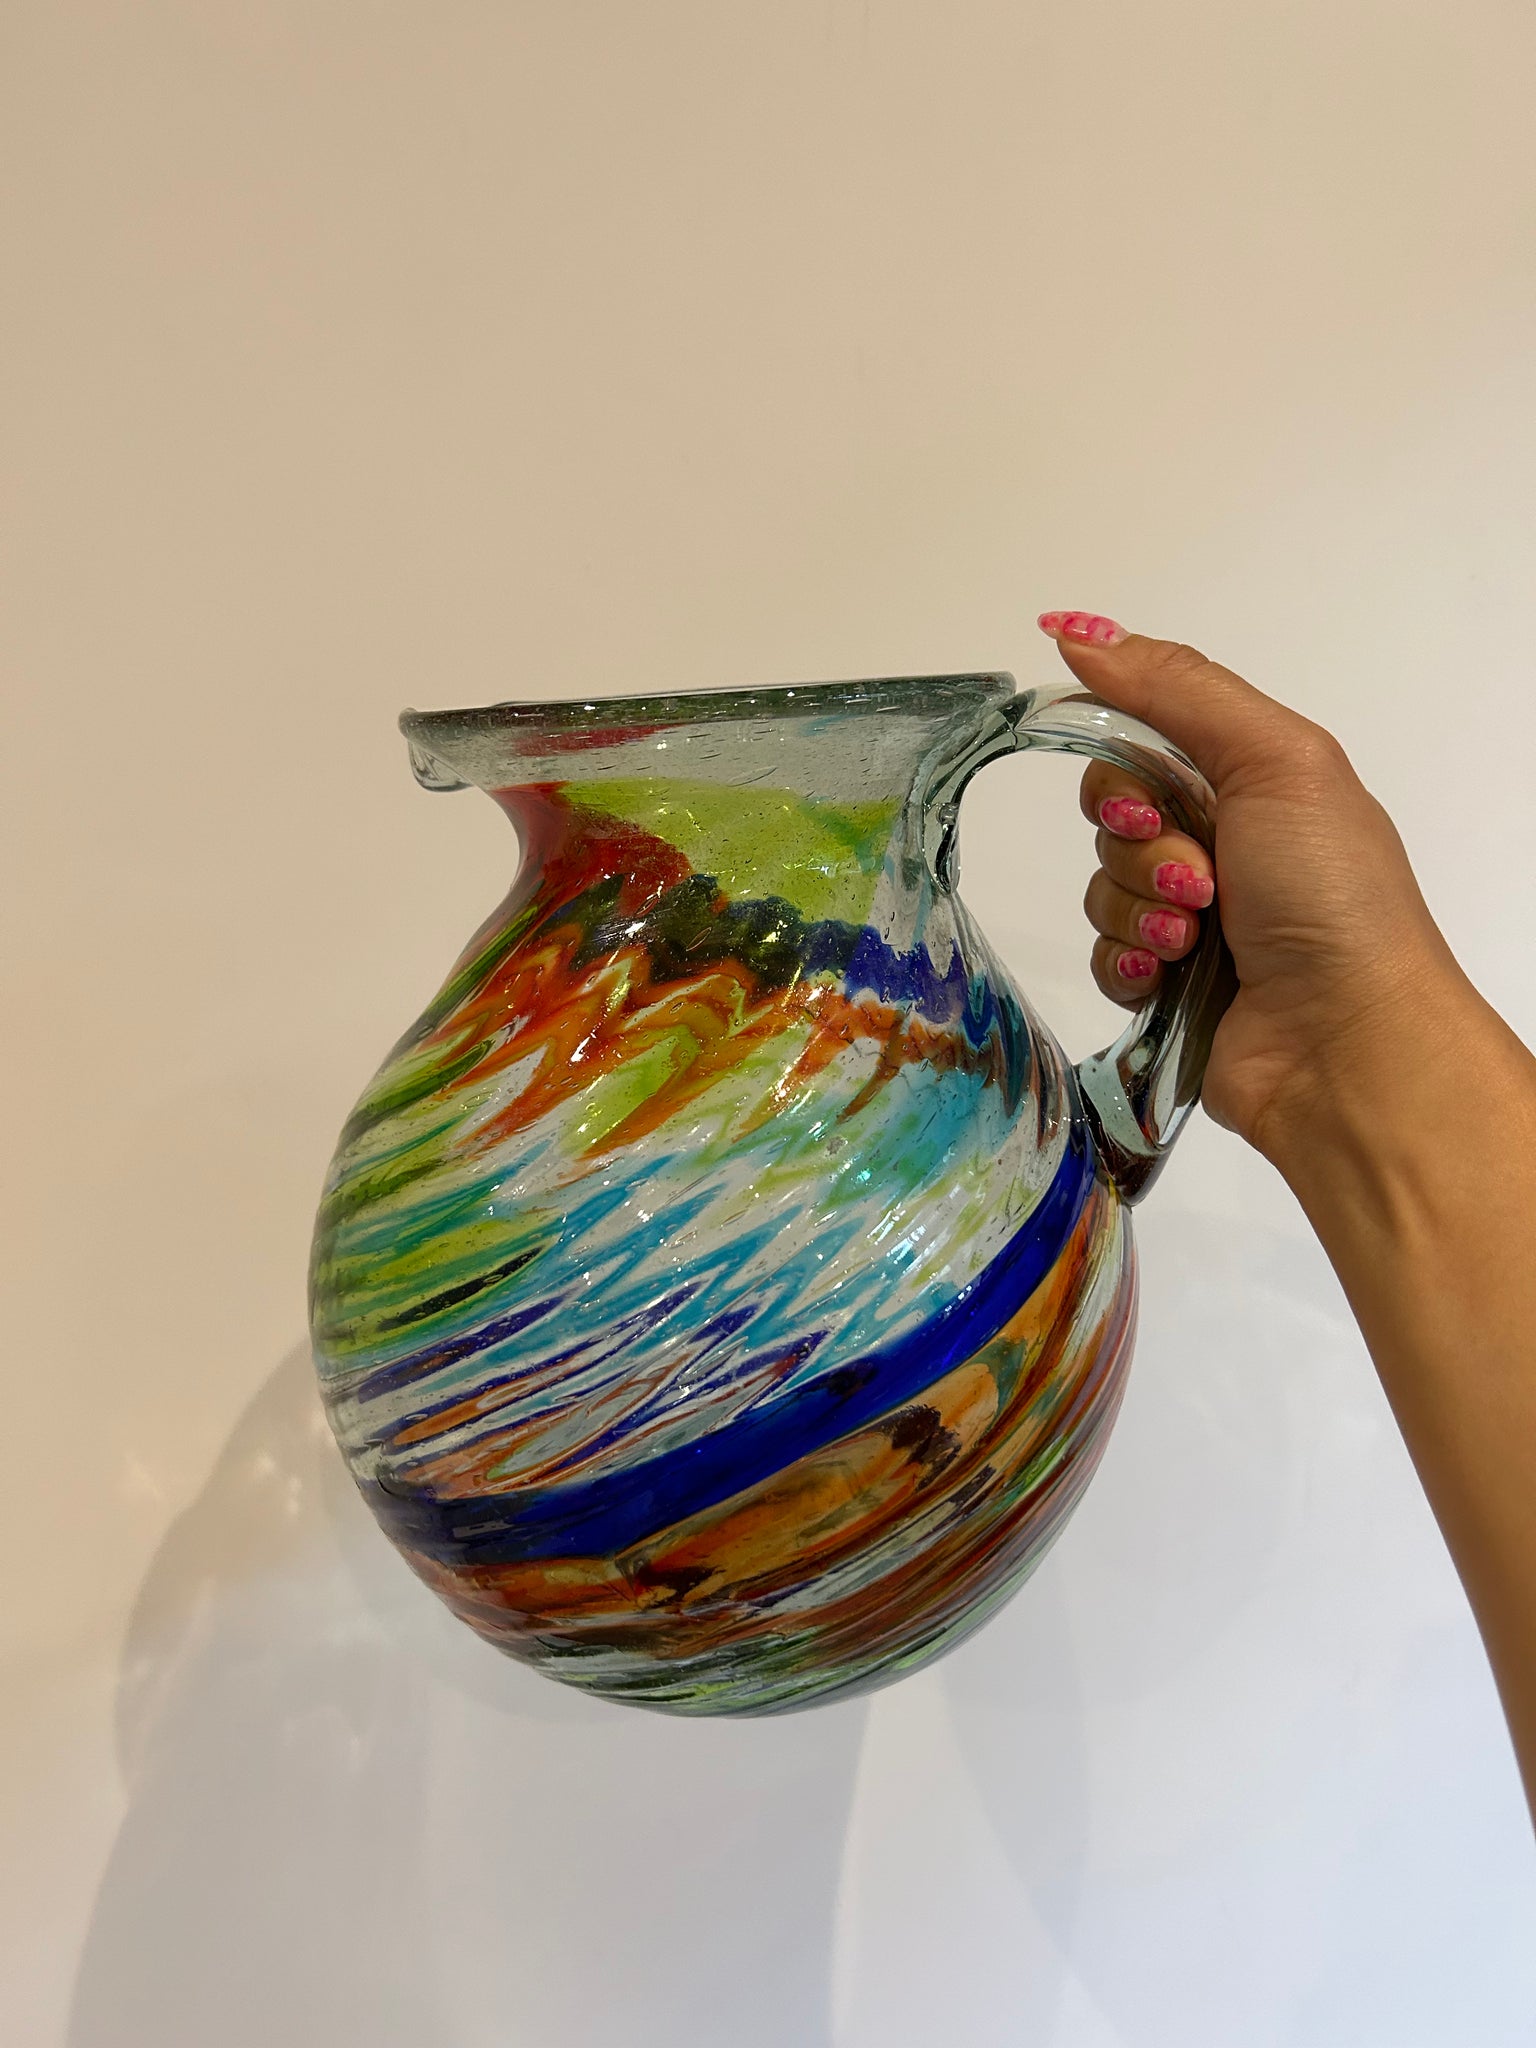 Rainbow glass pitcher